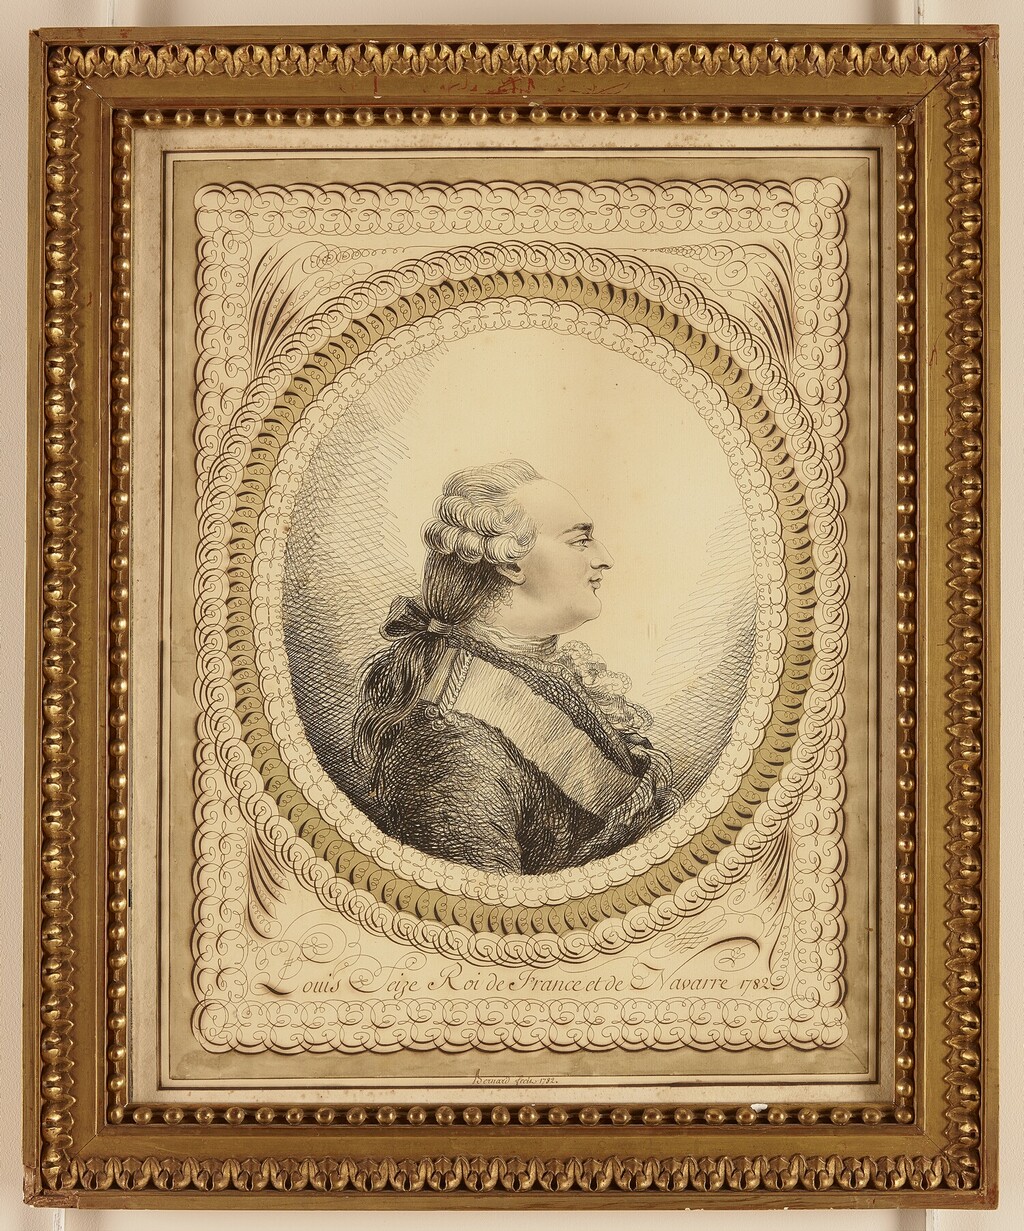 bernard - Les Bernard : portraits calligraphiques, dit au trait de plume, de Marie-Antoinette et Louis XVI Image218